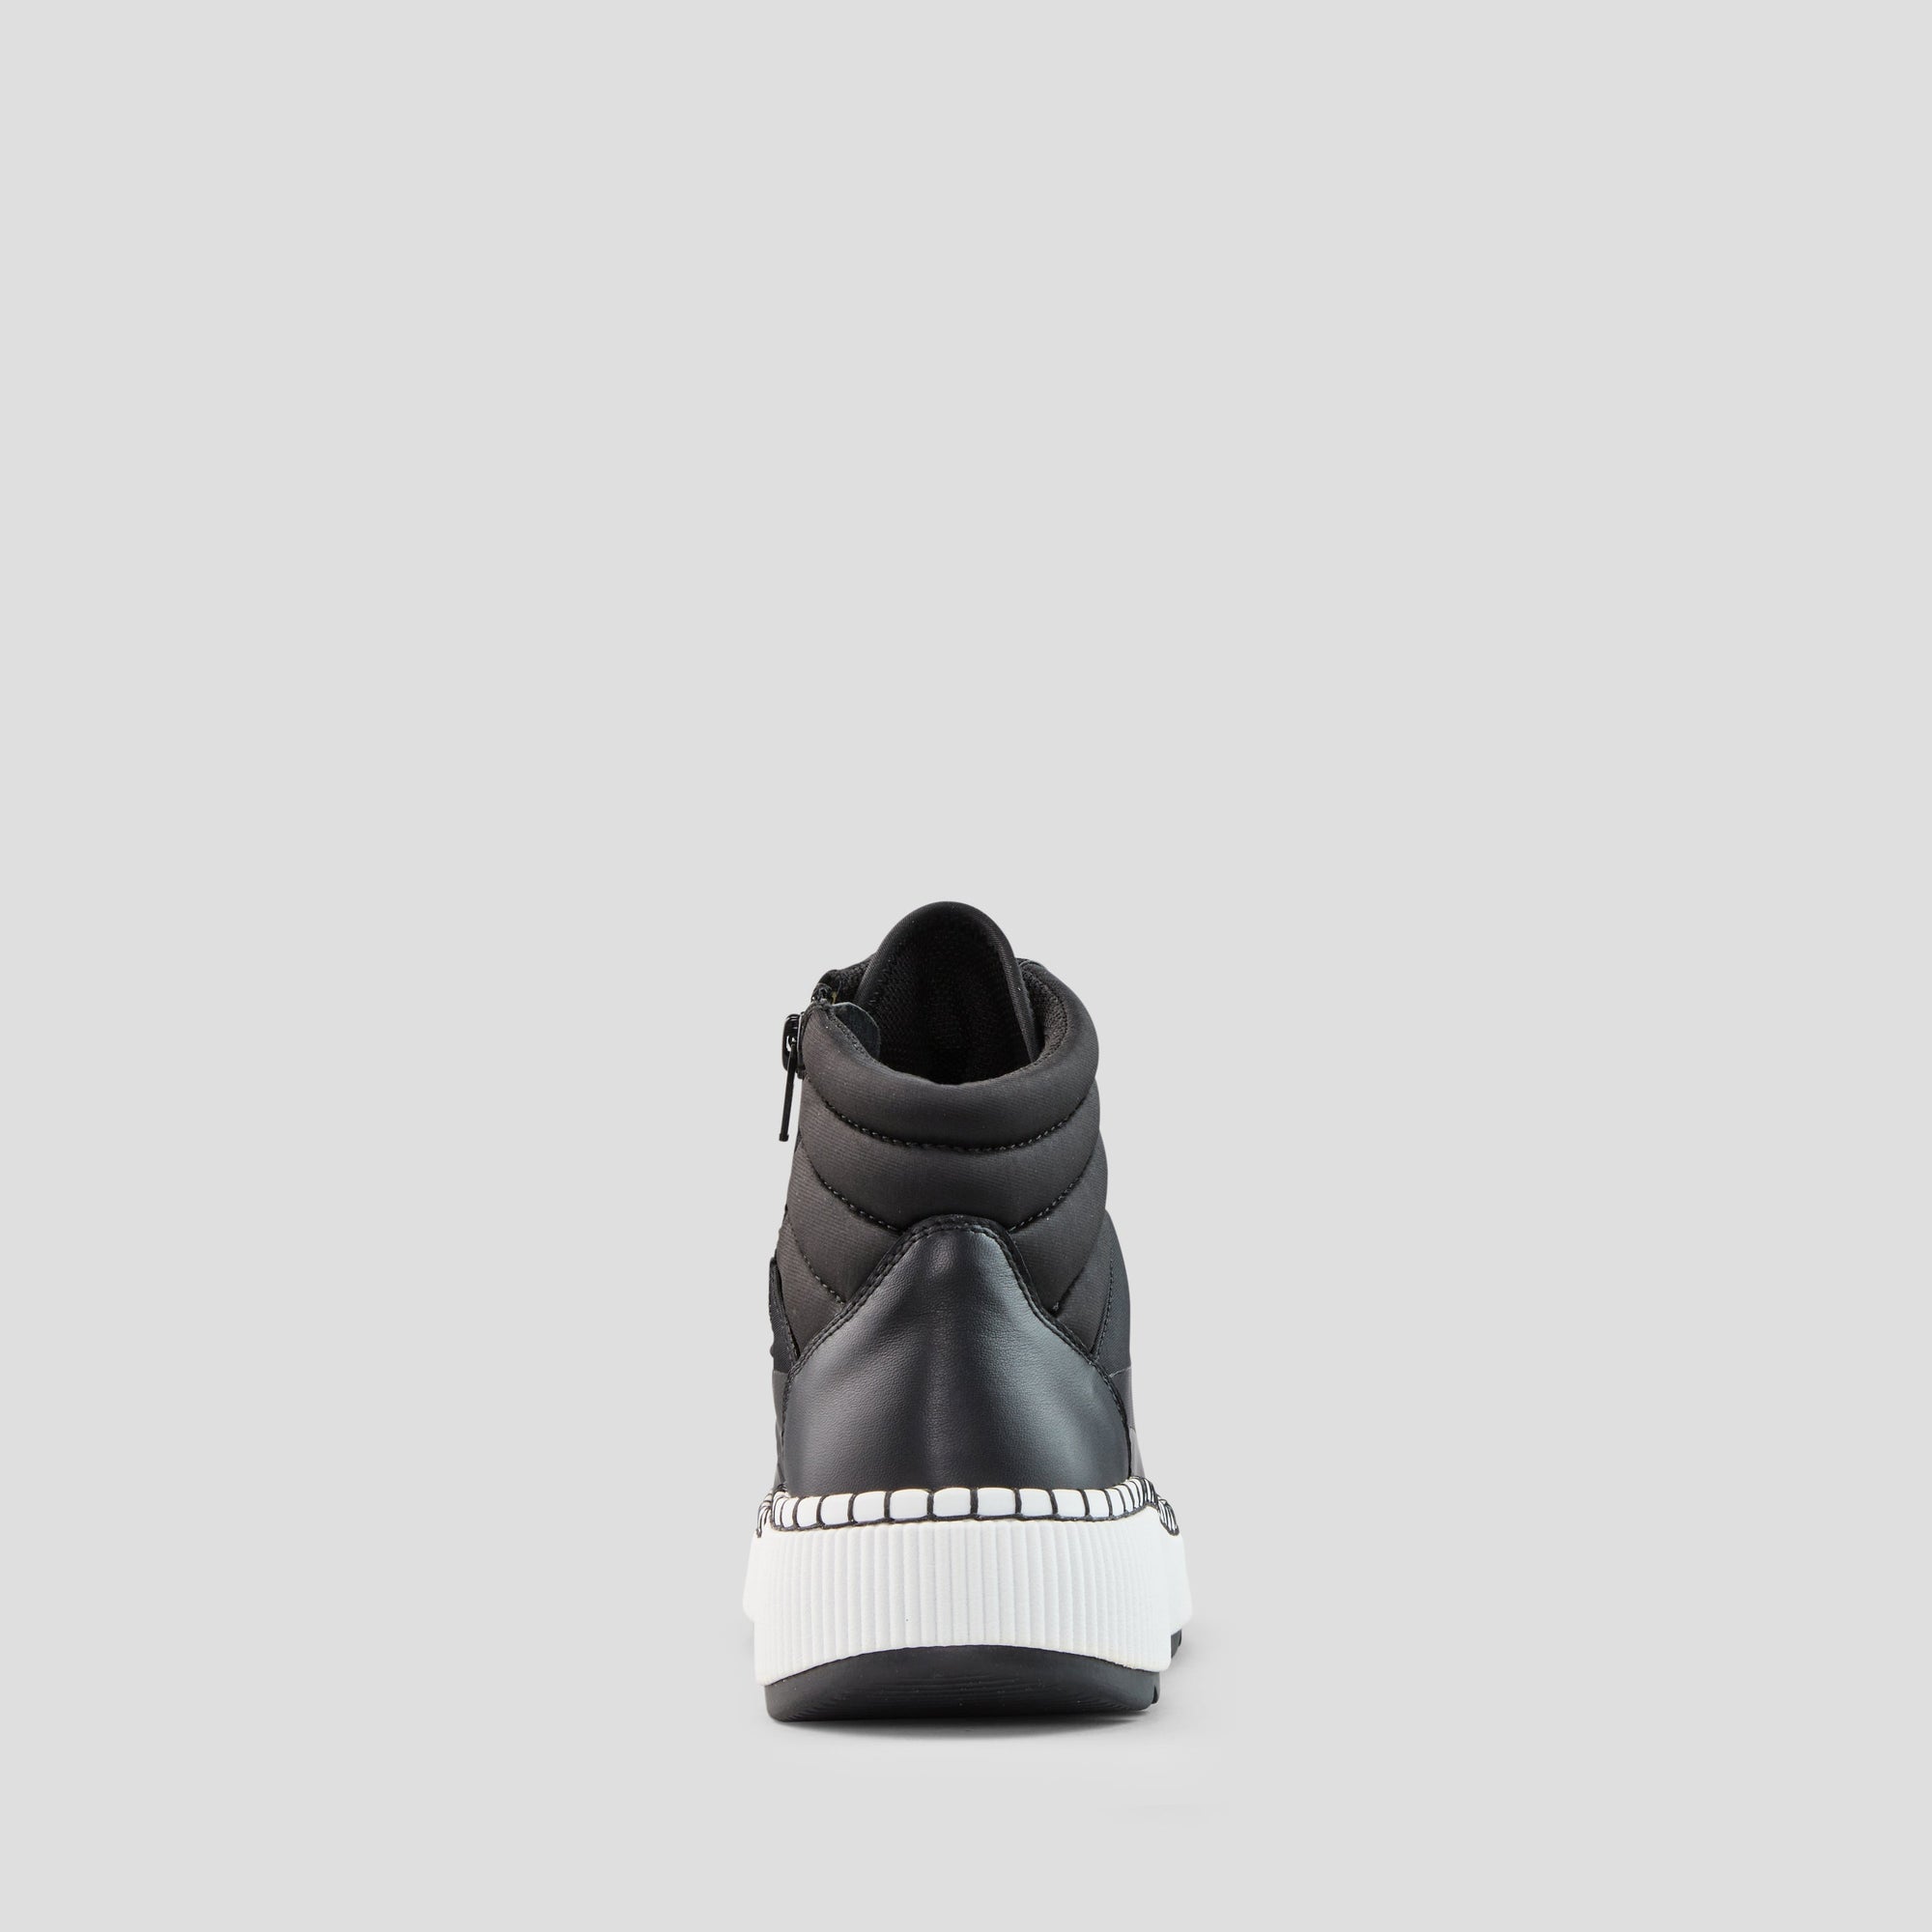 Savant - Sneaker Luxmotion imperméables en nylon et cuir - Colour Black